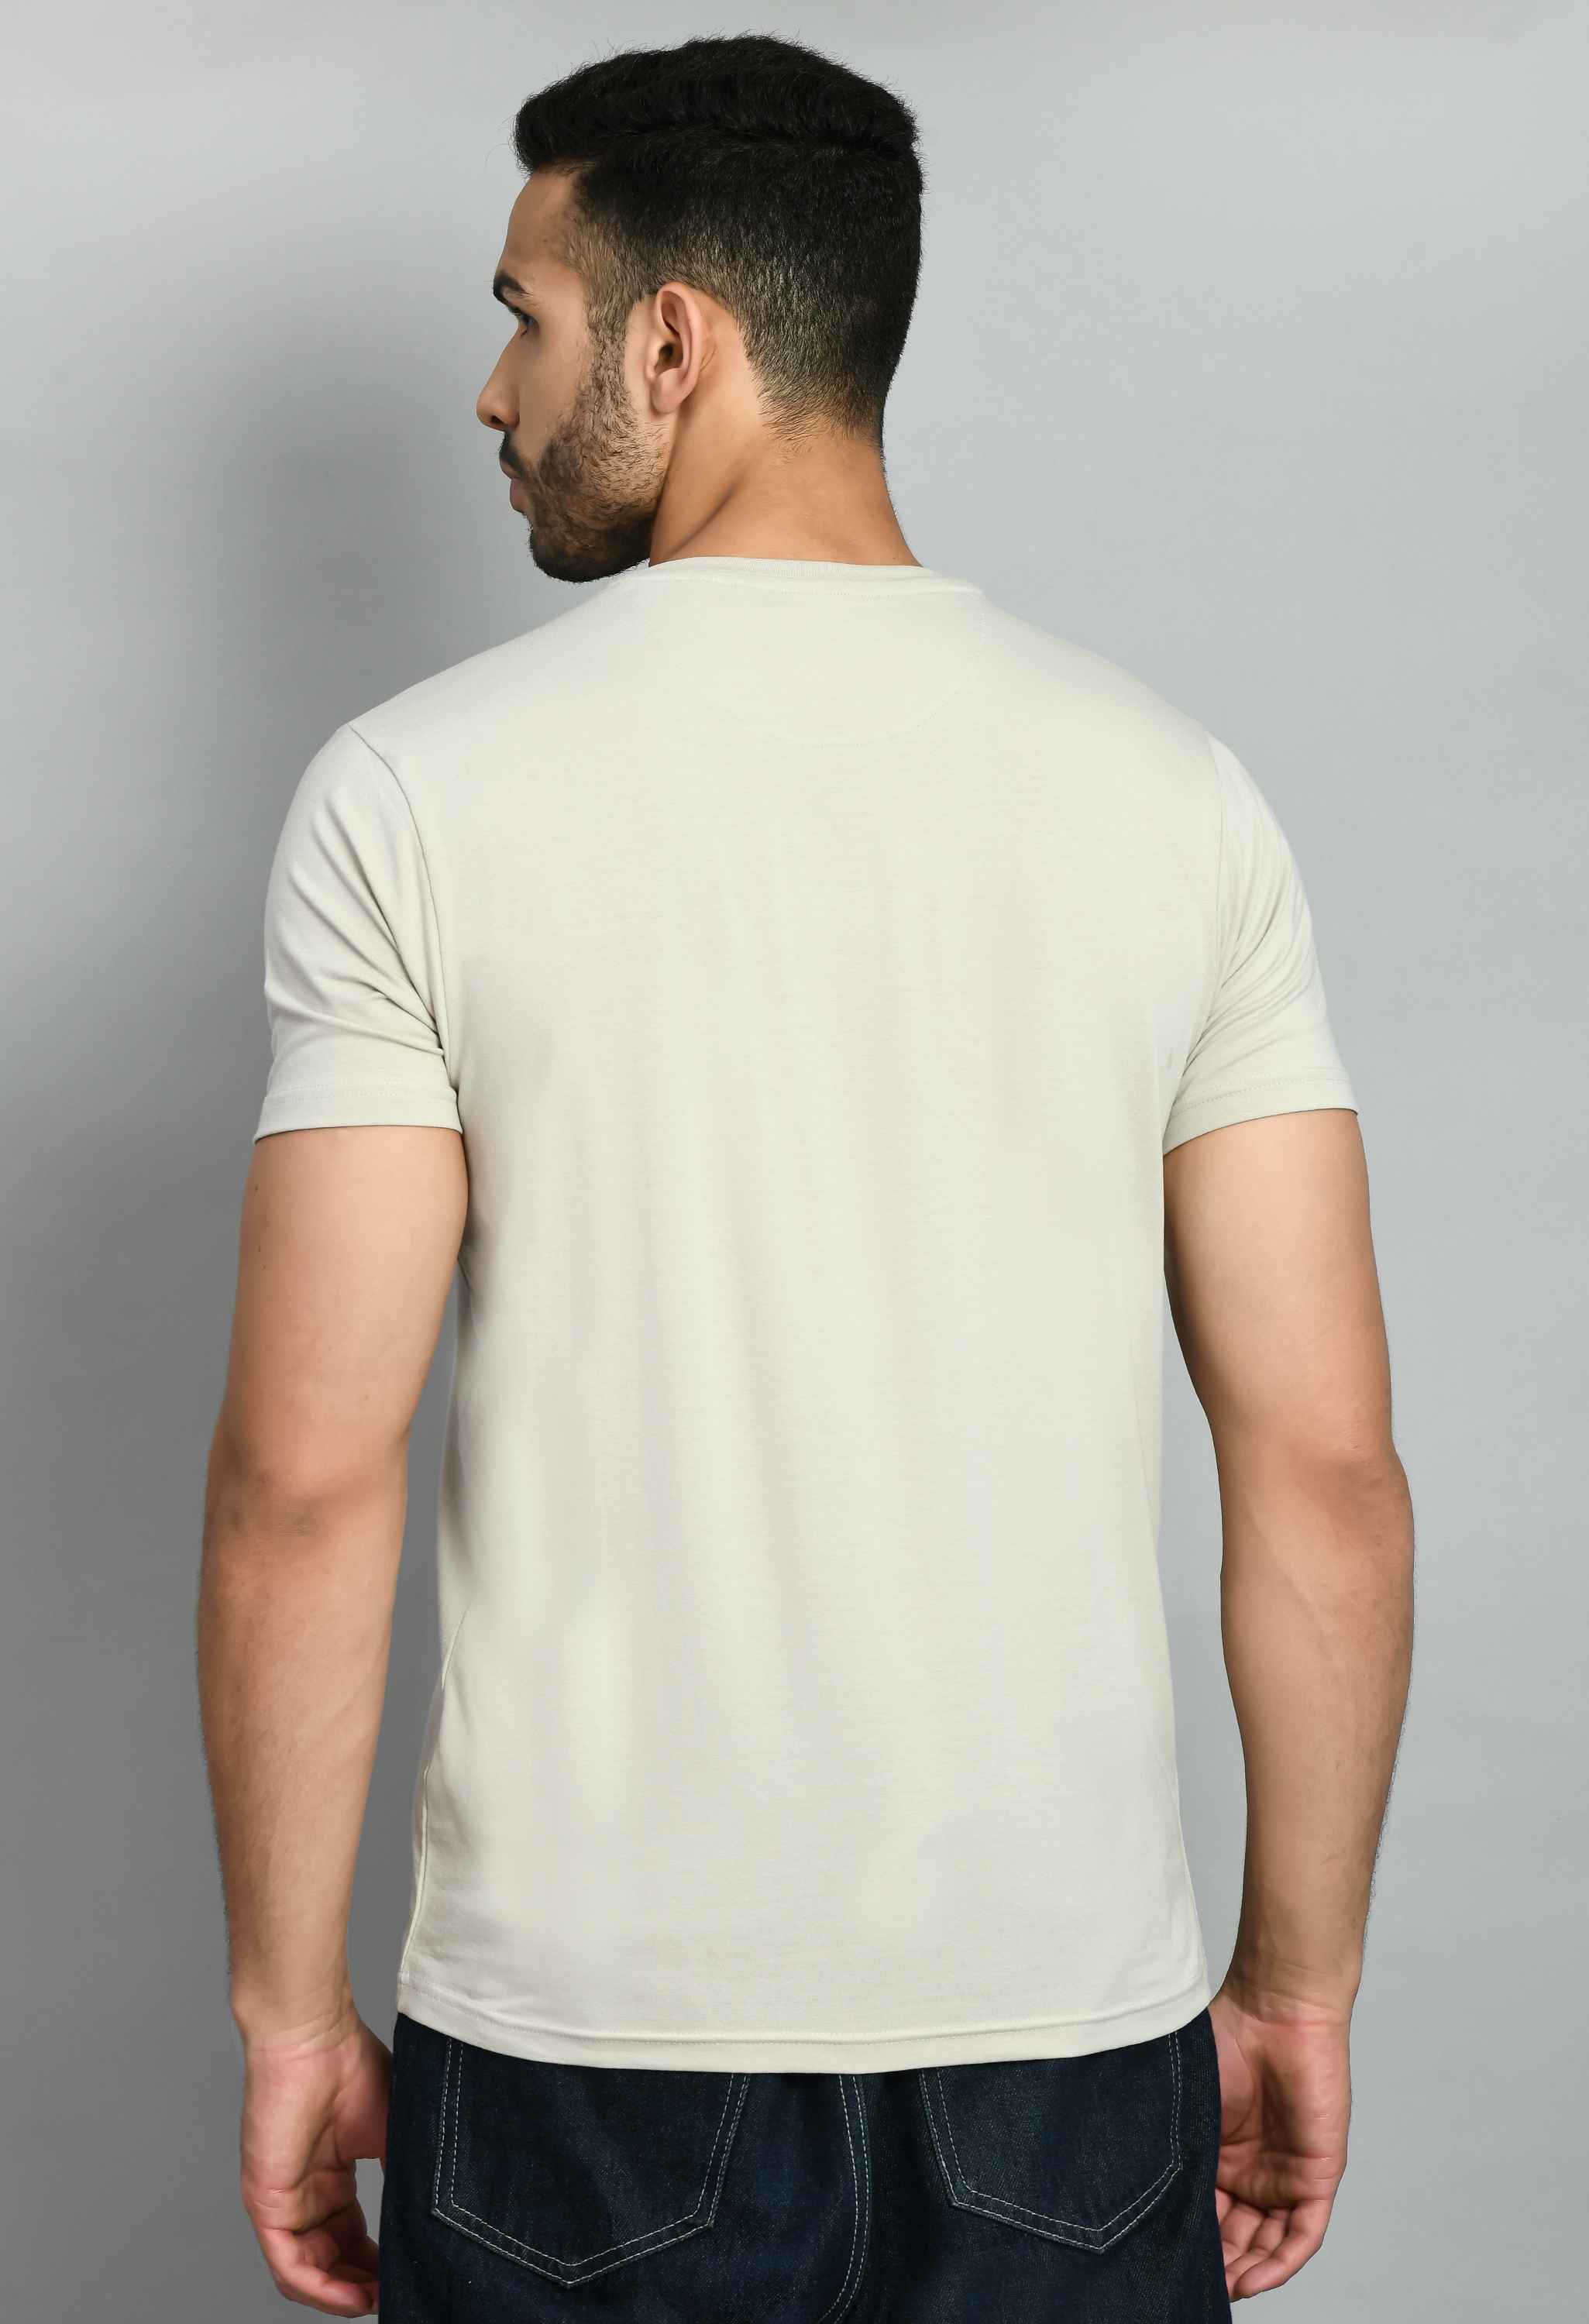 Men's Solid Beige Casual T-Shirt - SQUIREHOOD